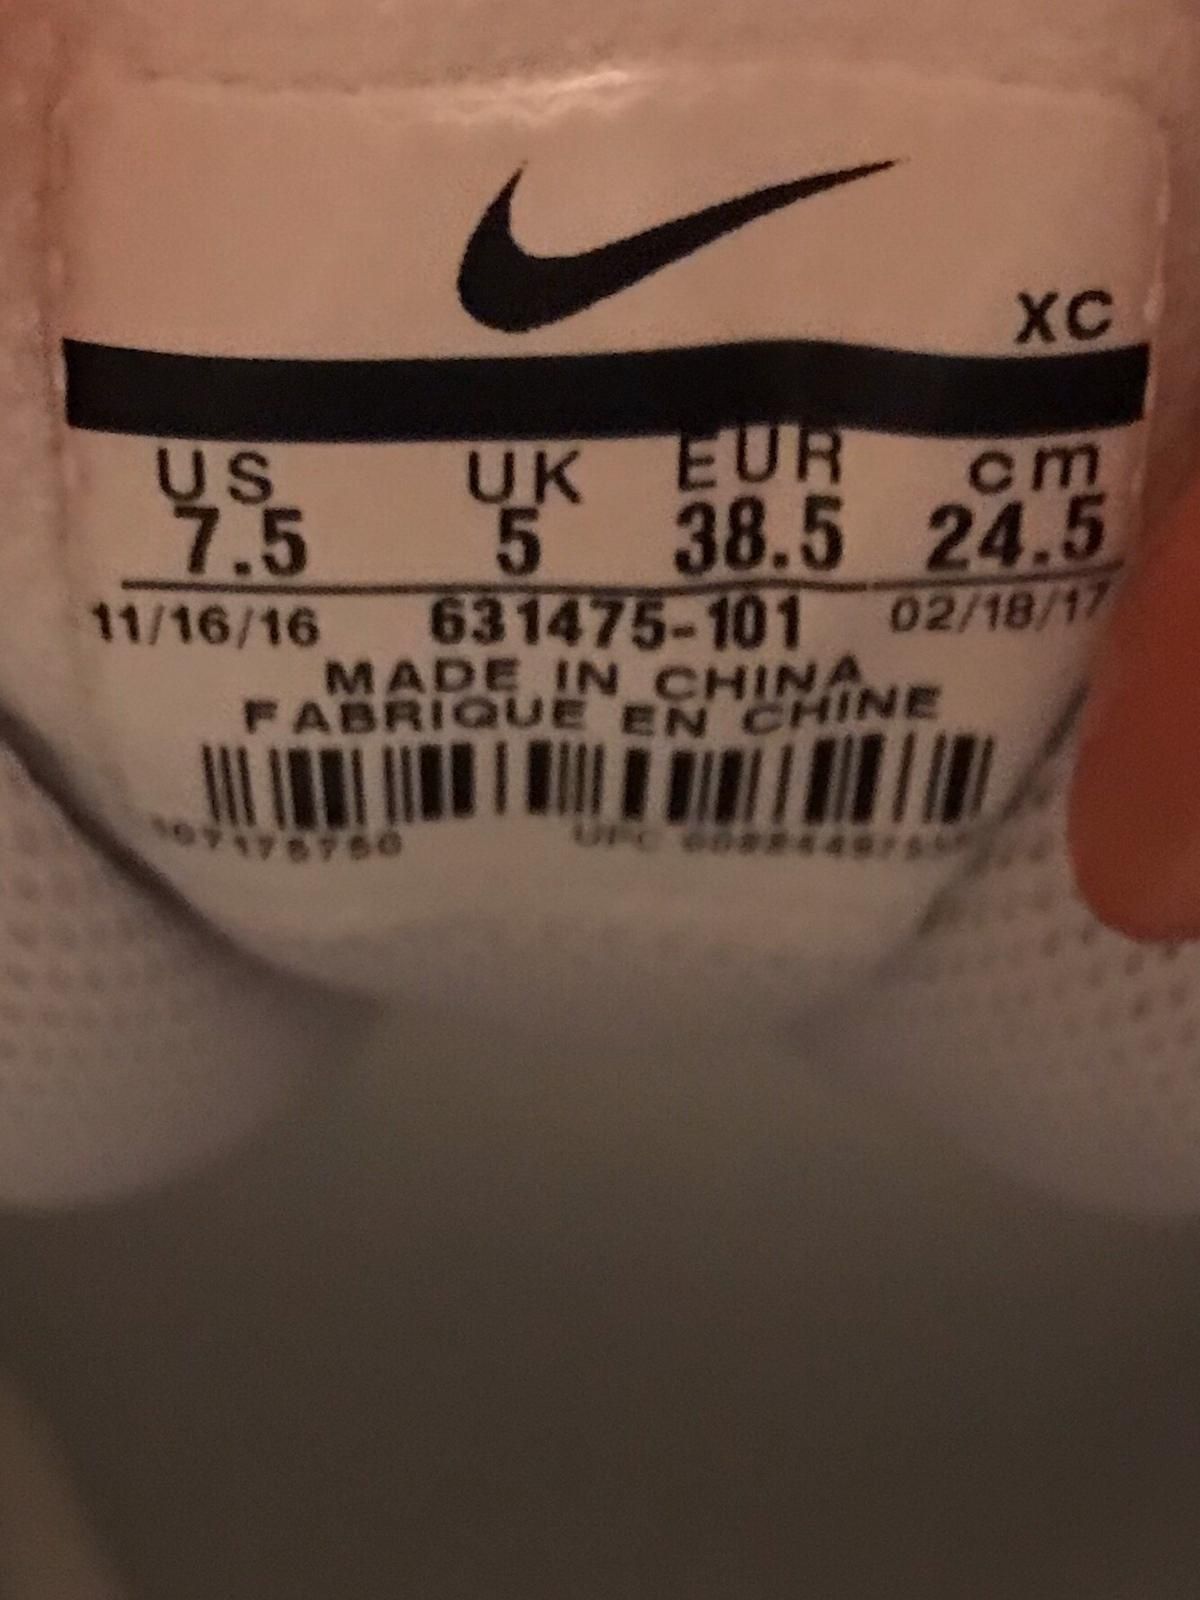 Adidași Nike USA, noi, marime 38,5, la DOAR 219 lei!